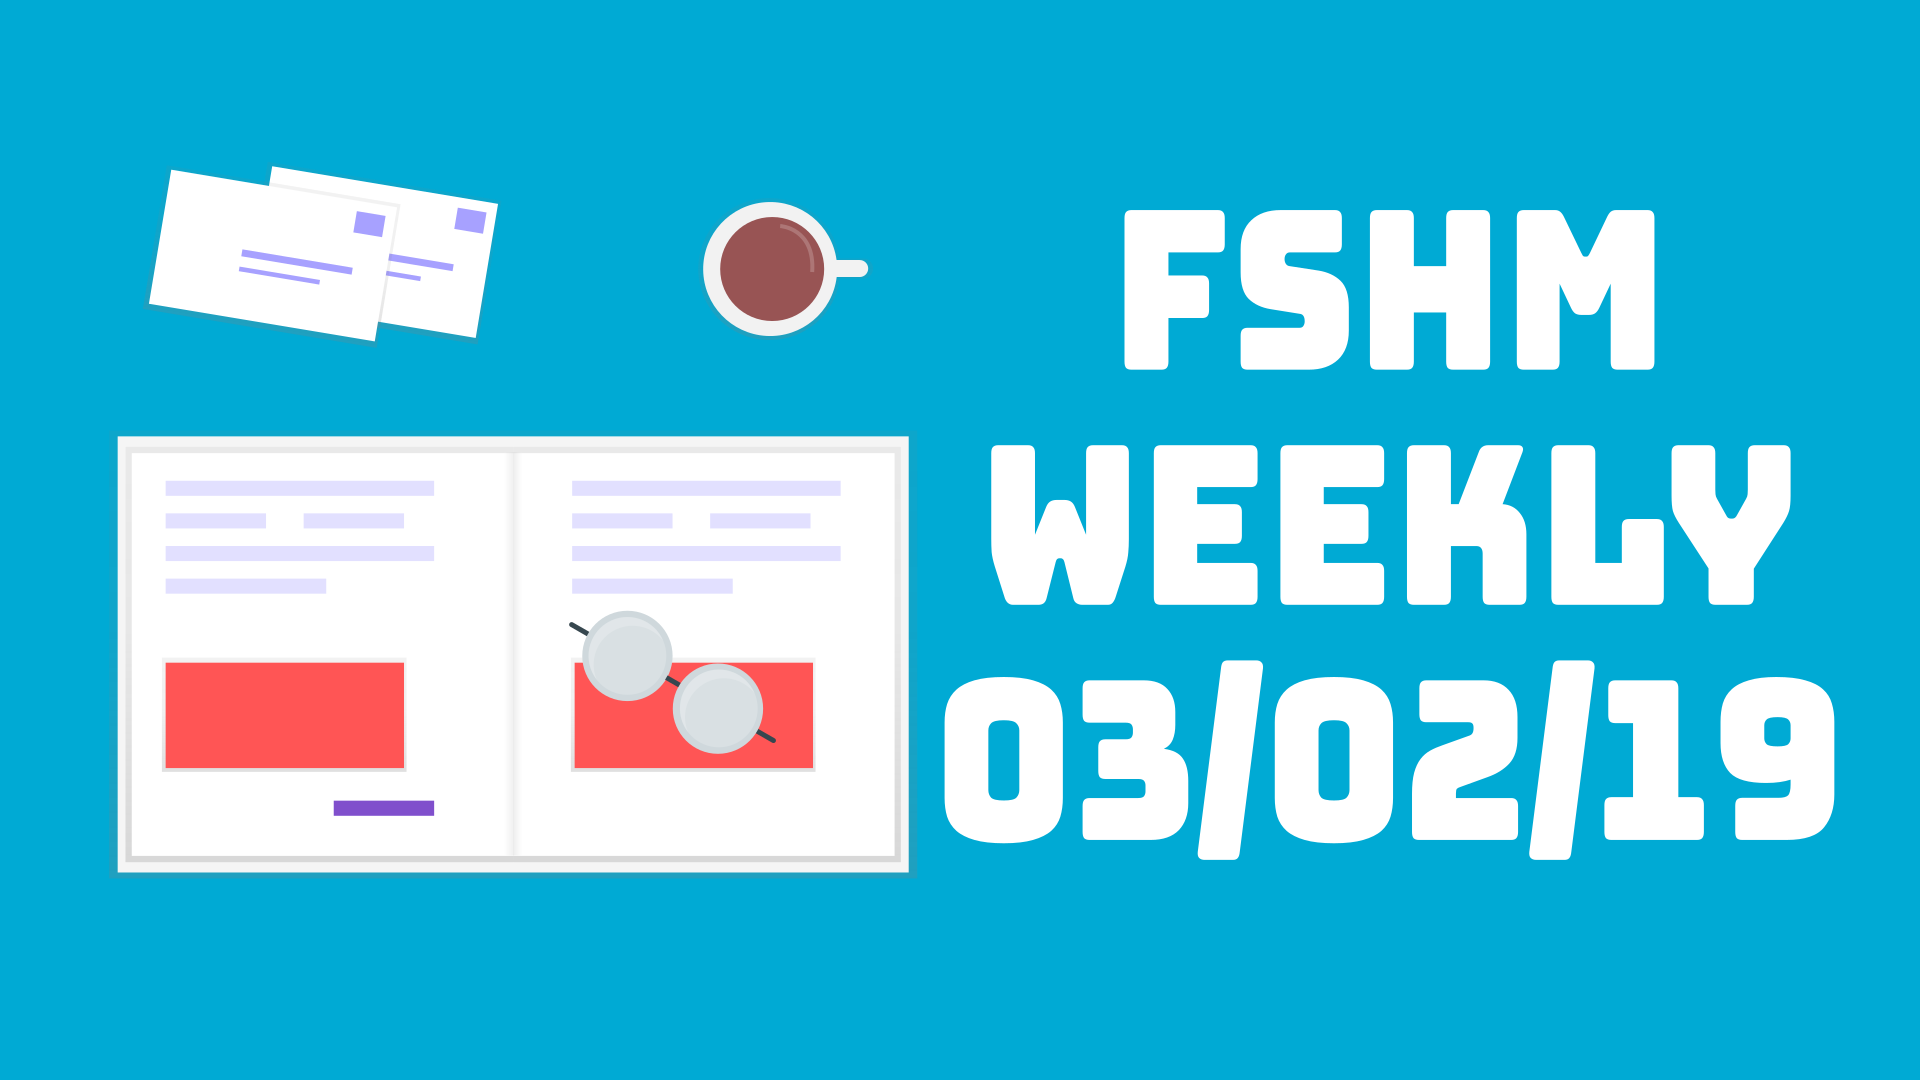 FSHM Weekly - 03/02/19